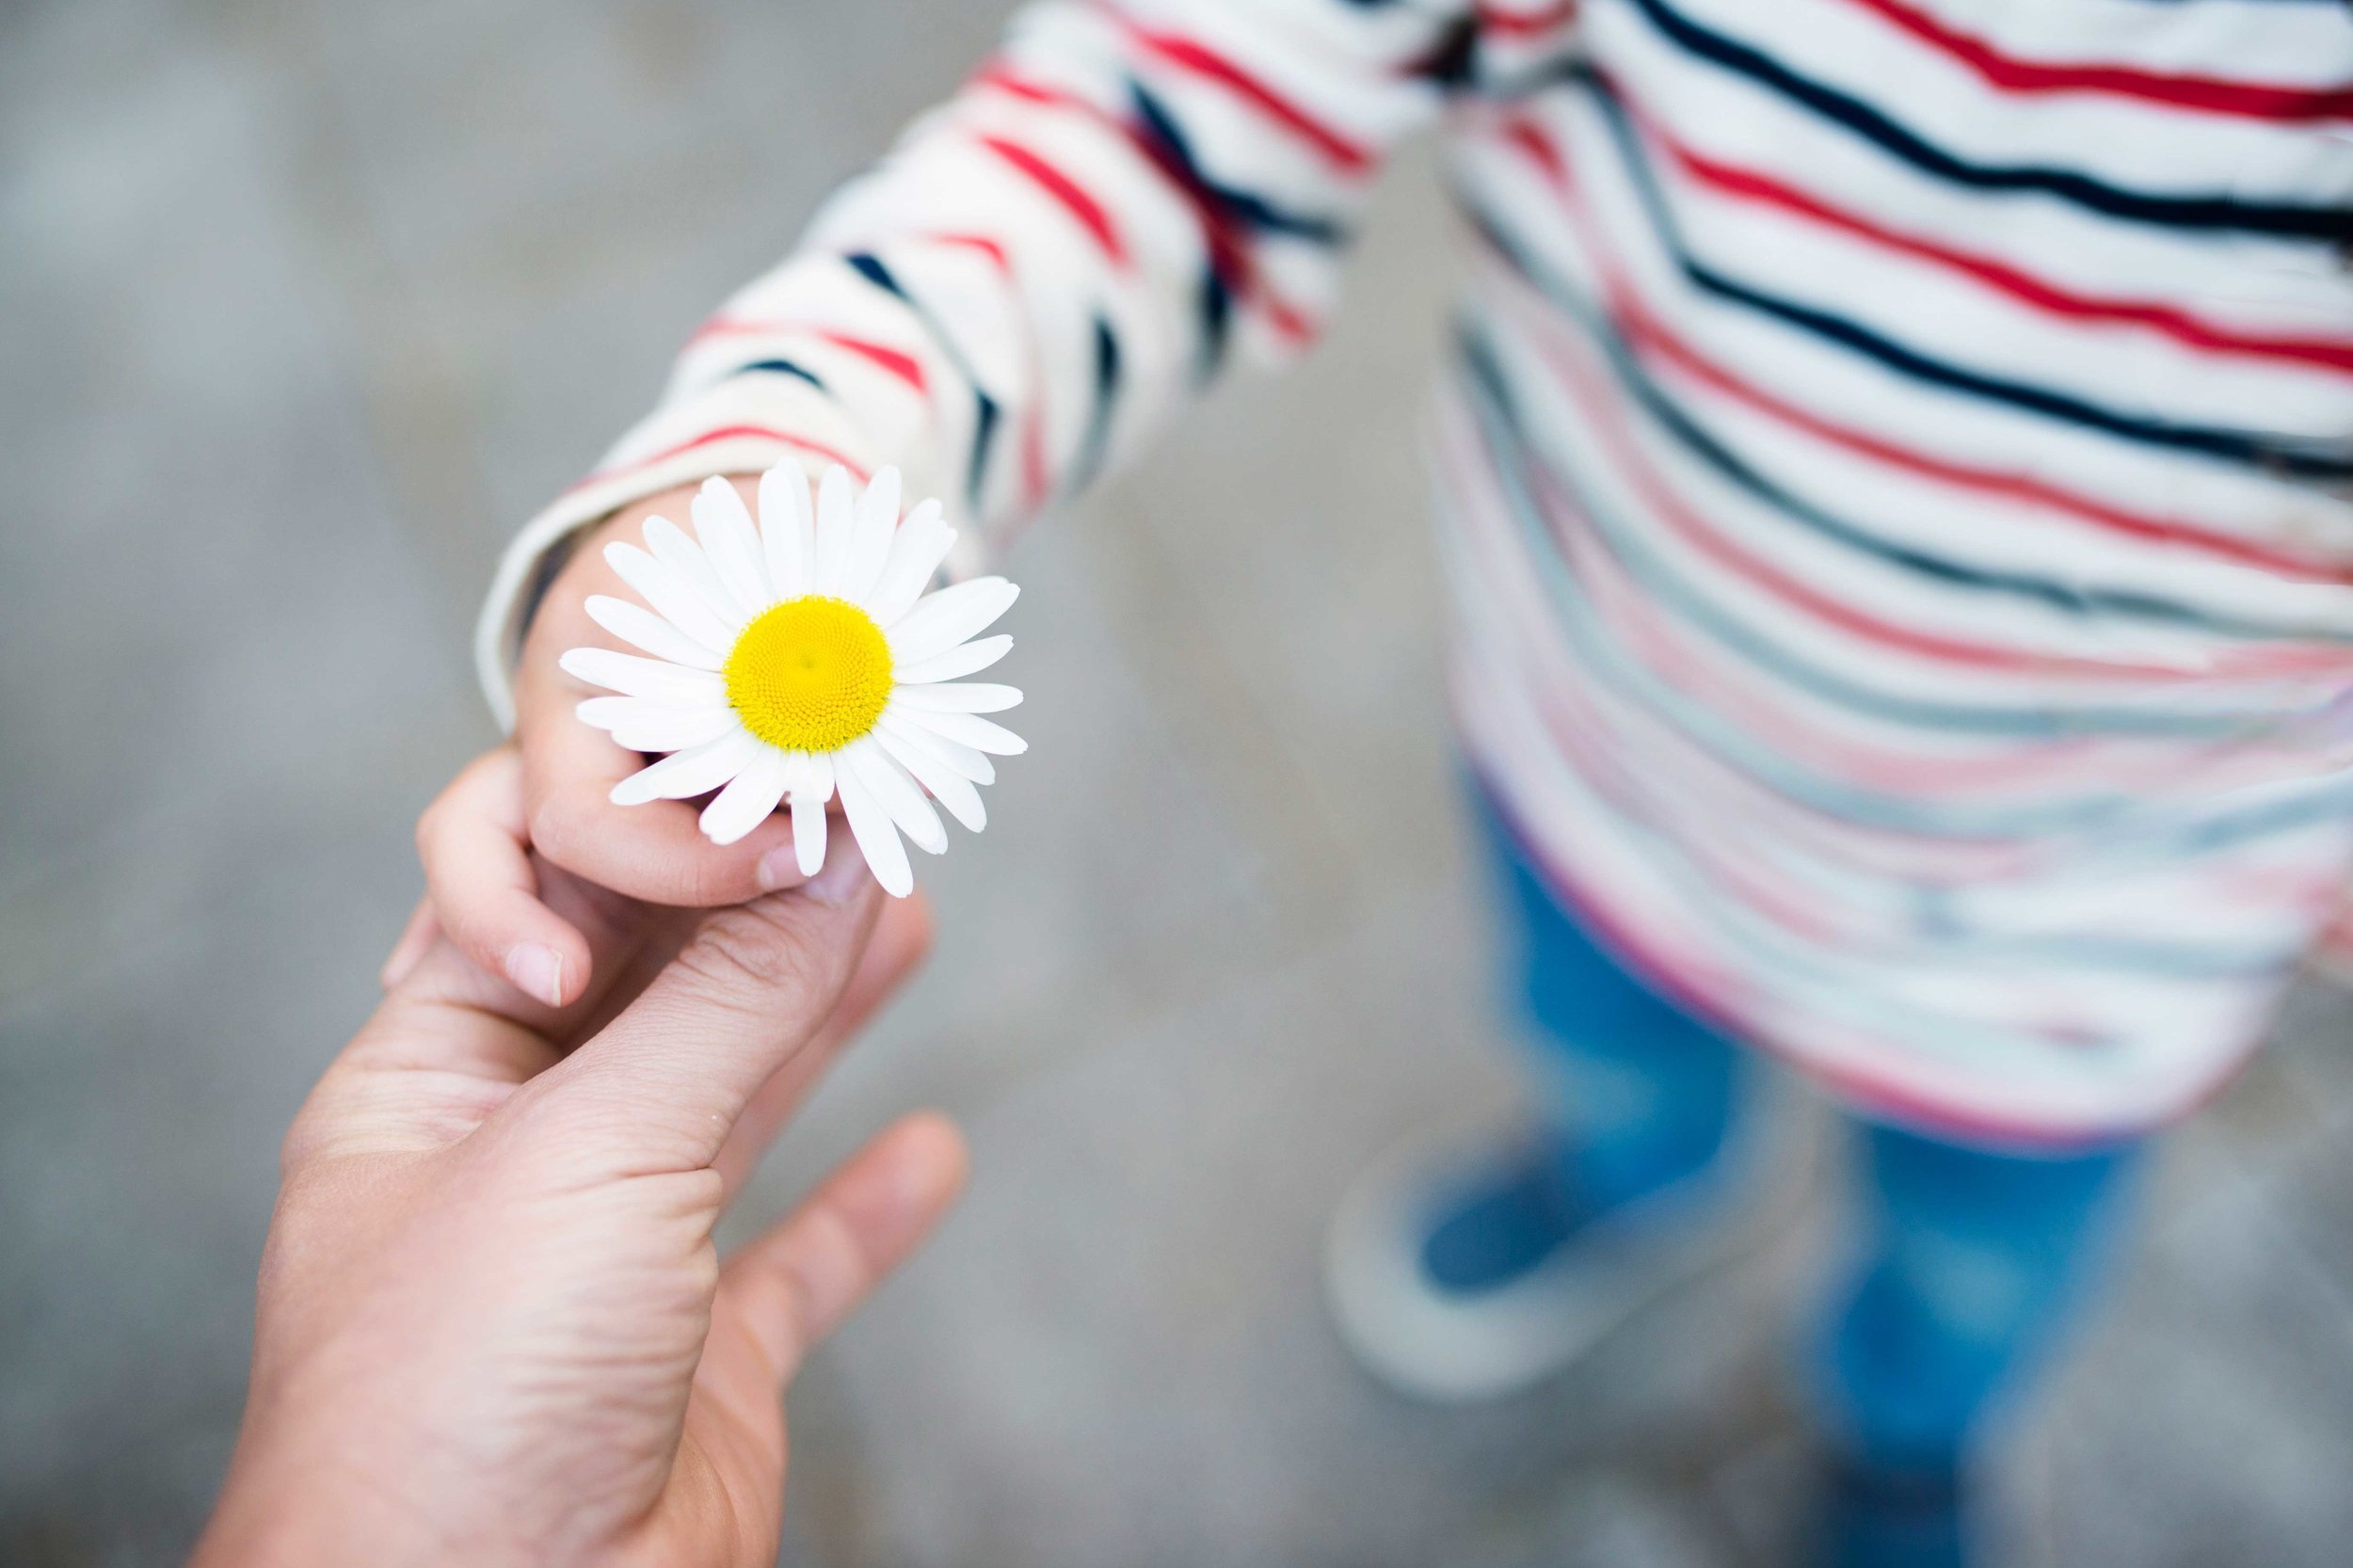 Люди проявляют доброту. Цветок в детской руке. О доброте. Ромашки в руках. Детская рука с цветком.